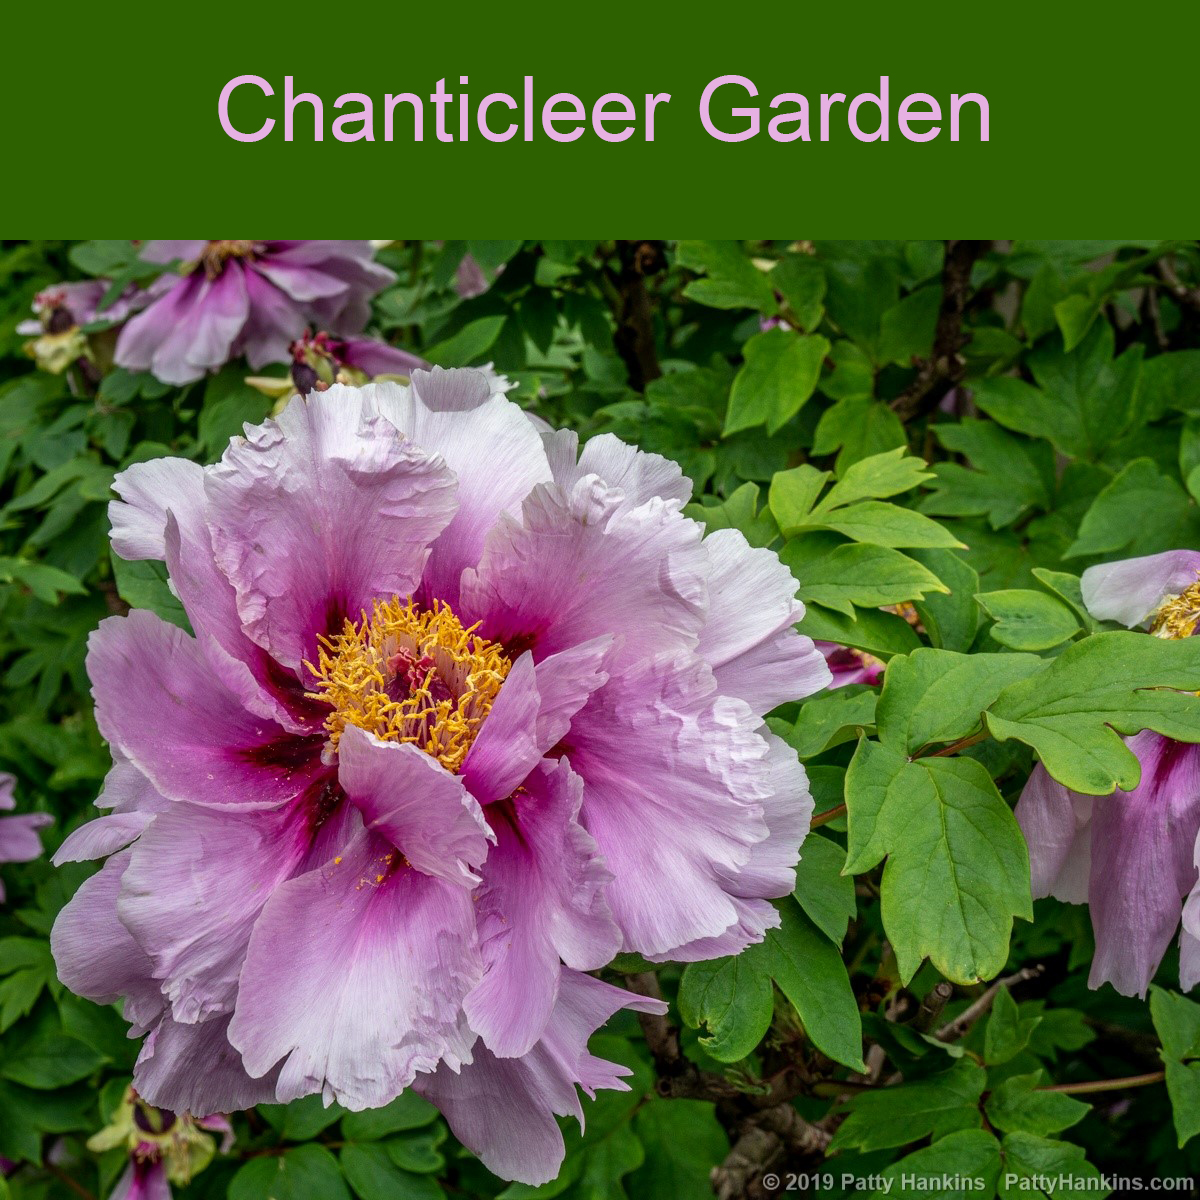 Chanticleer Garden